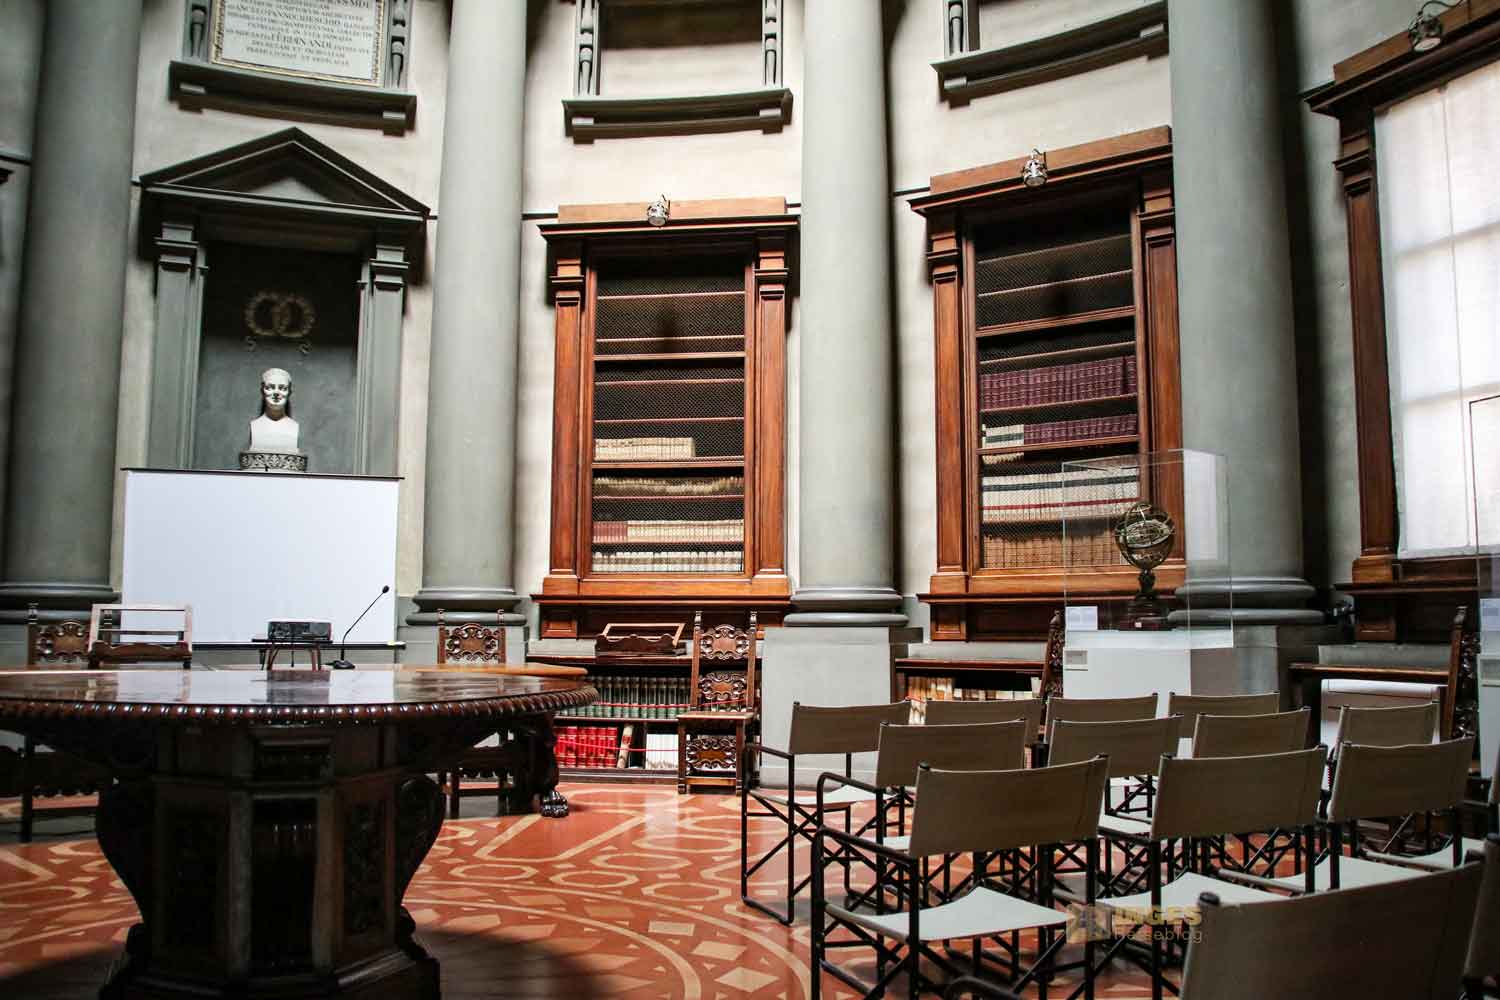 tribuna d'elci bibliothek laurenziana florenz 4095